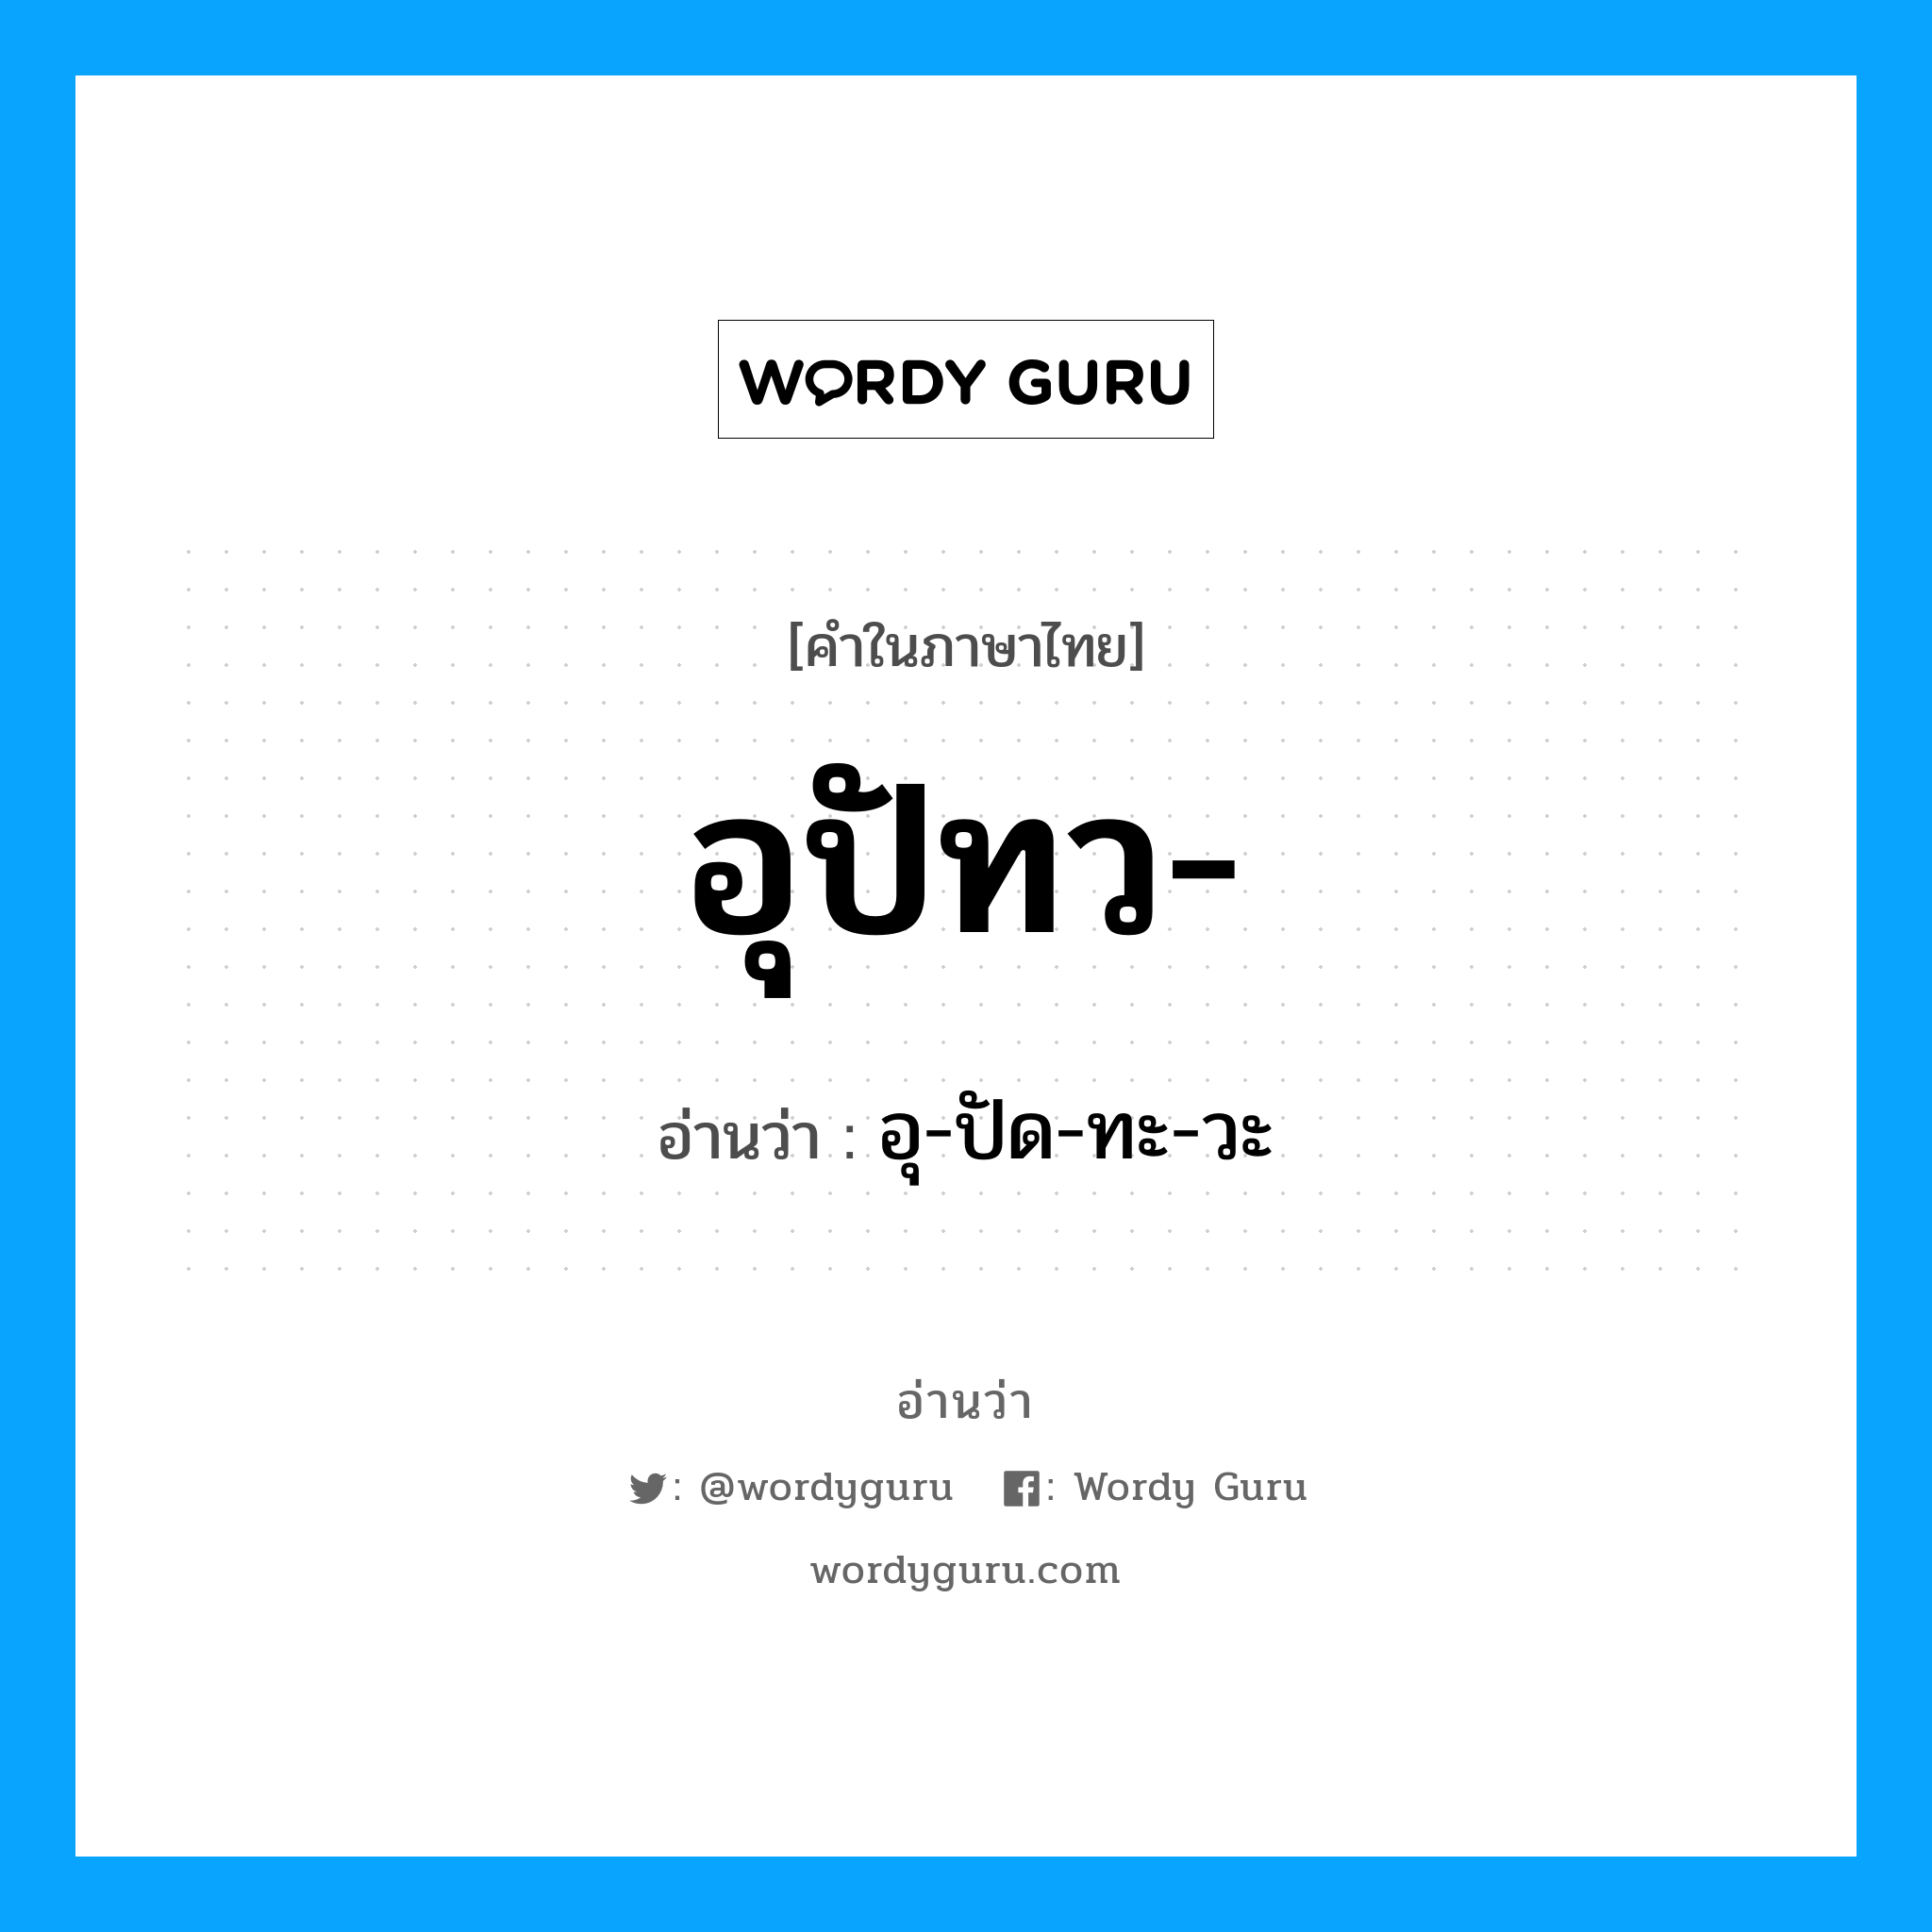 อุ-ปัด-ทะ-วะ เป็นคำอ่านของคำไหน?, คำในภาษาไทย อุ-ปัด-ทะ-วะ อ่านว่า อุปัทว-